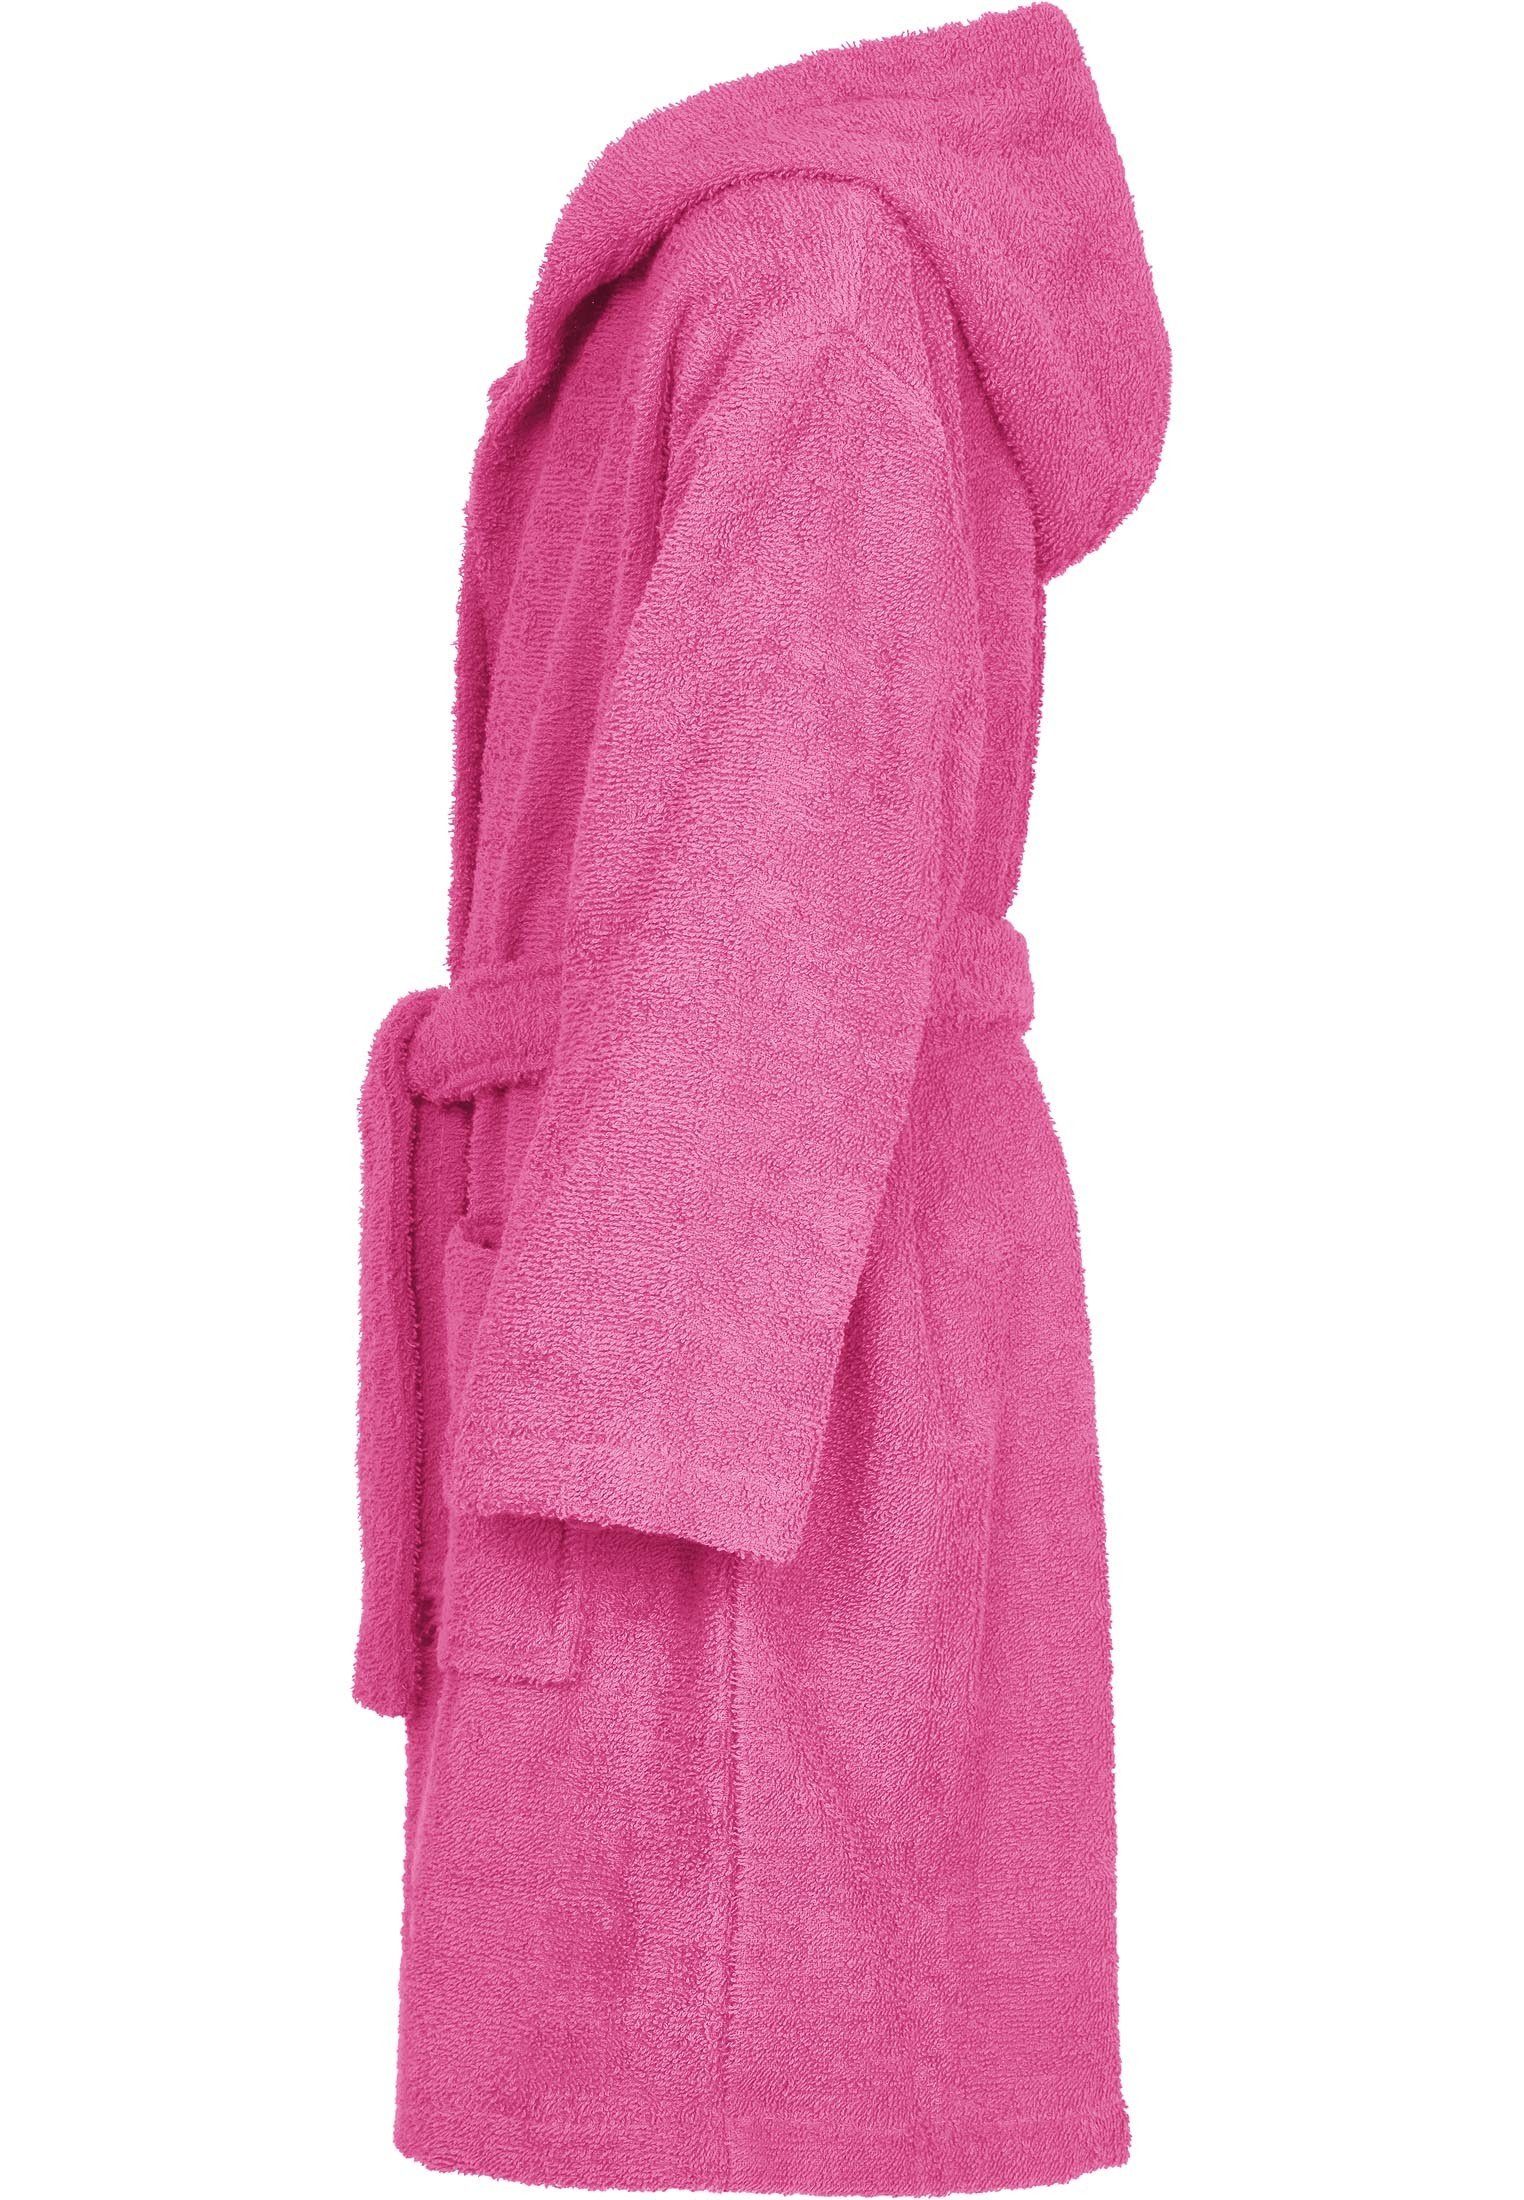 Mädchen Playshoes und Kinderbademantel Jungen für Frotte-Bademantel pink